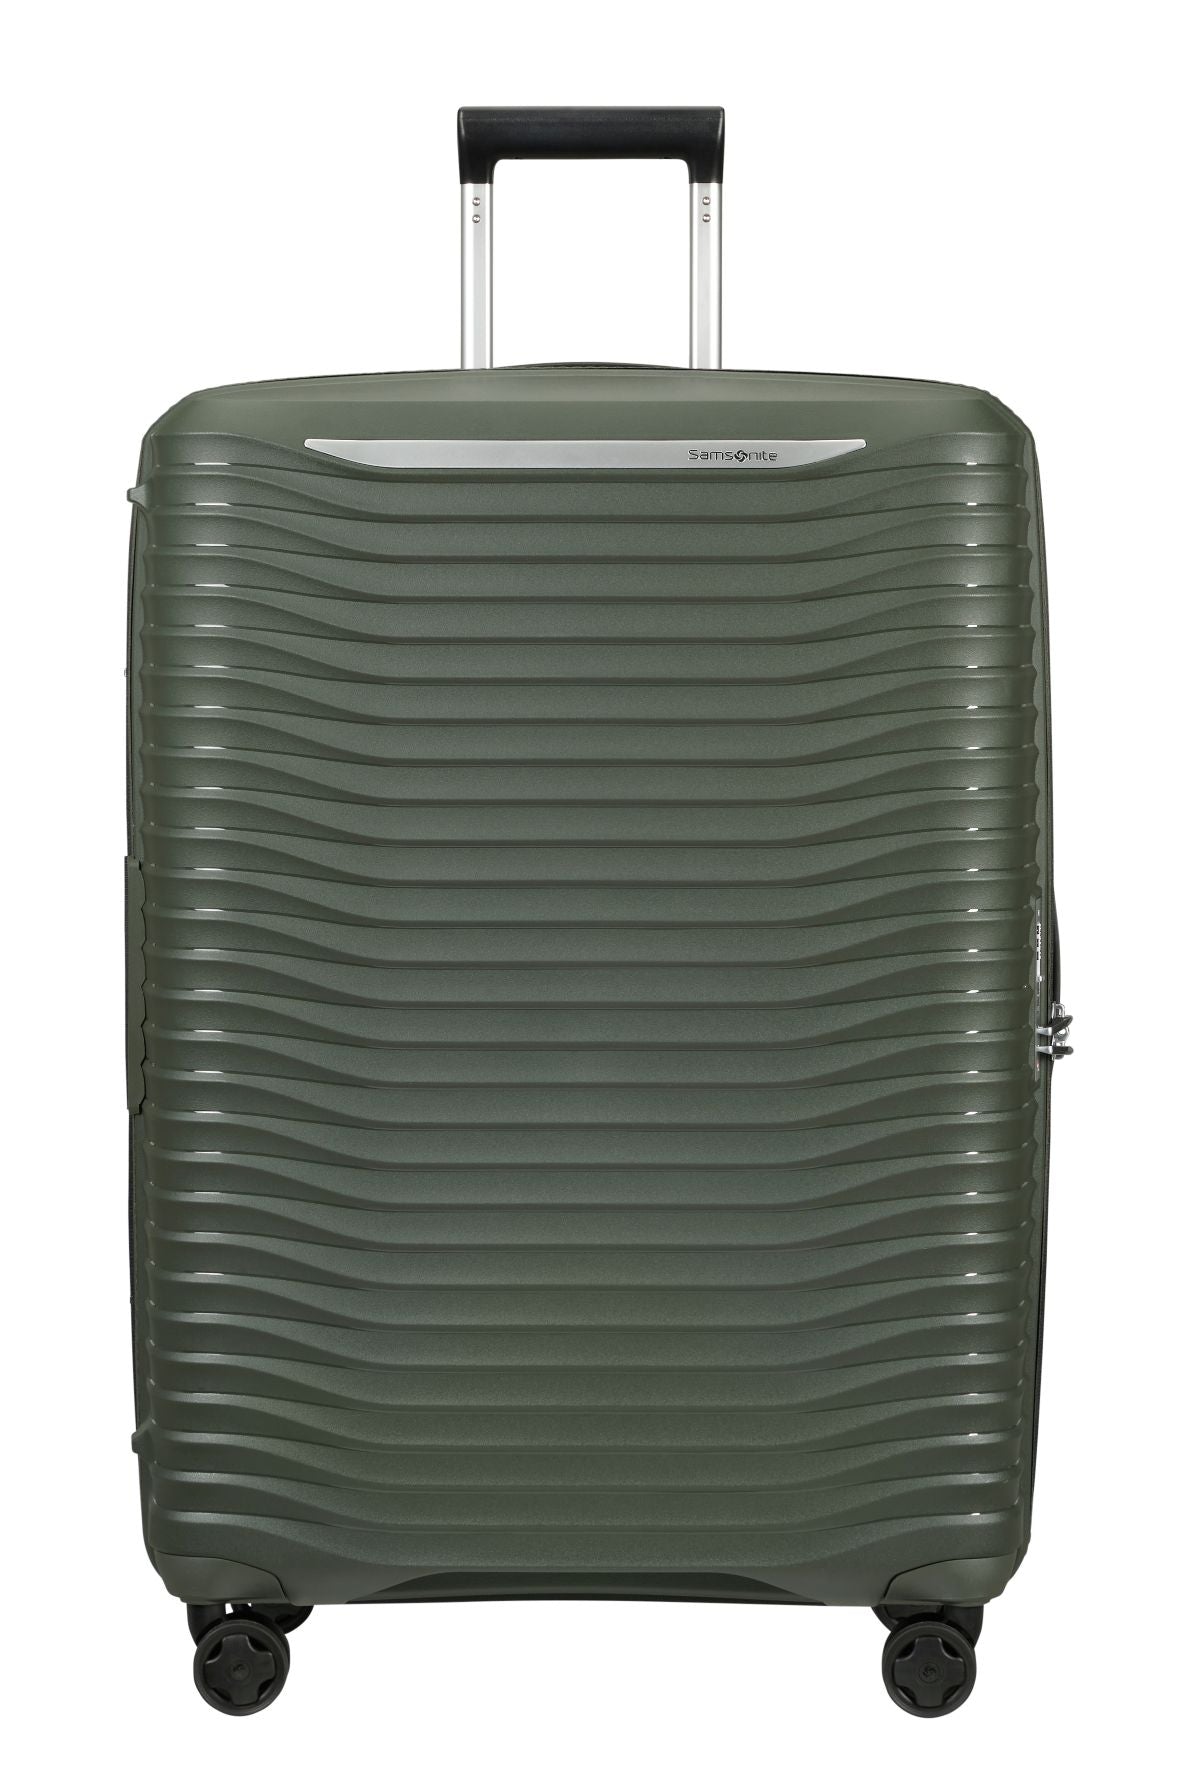 Samsonite - Upscape 75cm Medium Suitcase - Climbing Ivy